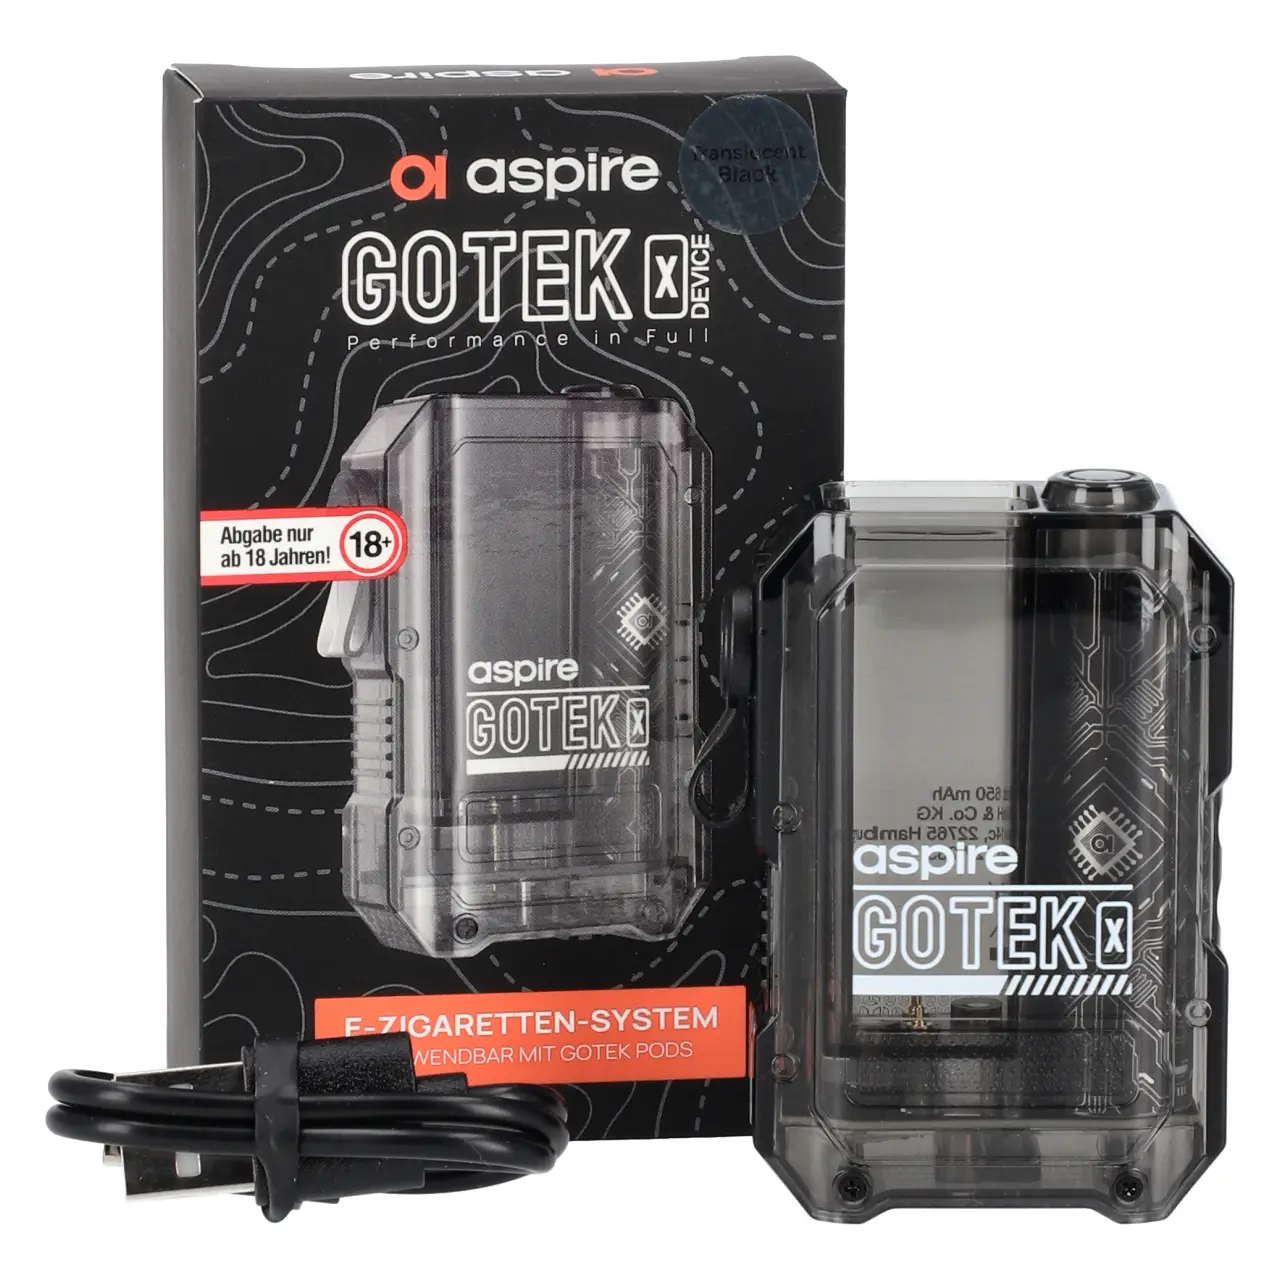 Aspire Gotek X Device - Akku / Basisgerät für Prefilled Pods - mit Verpackung